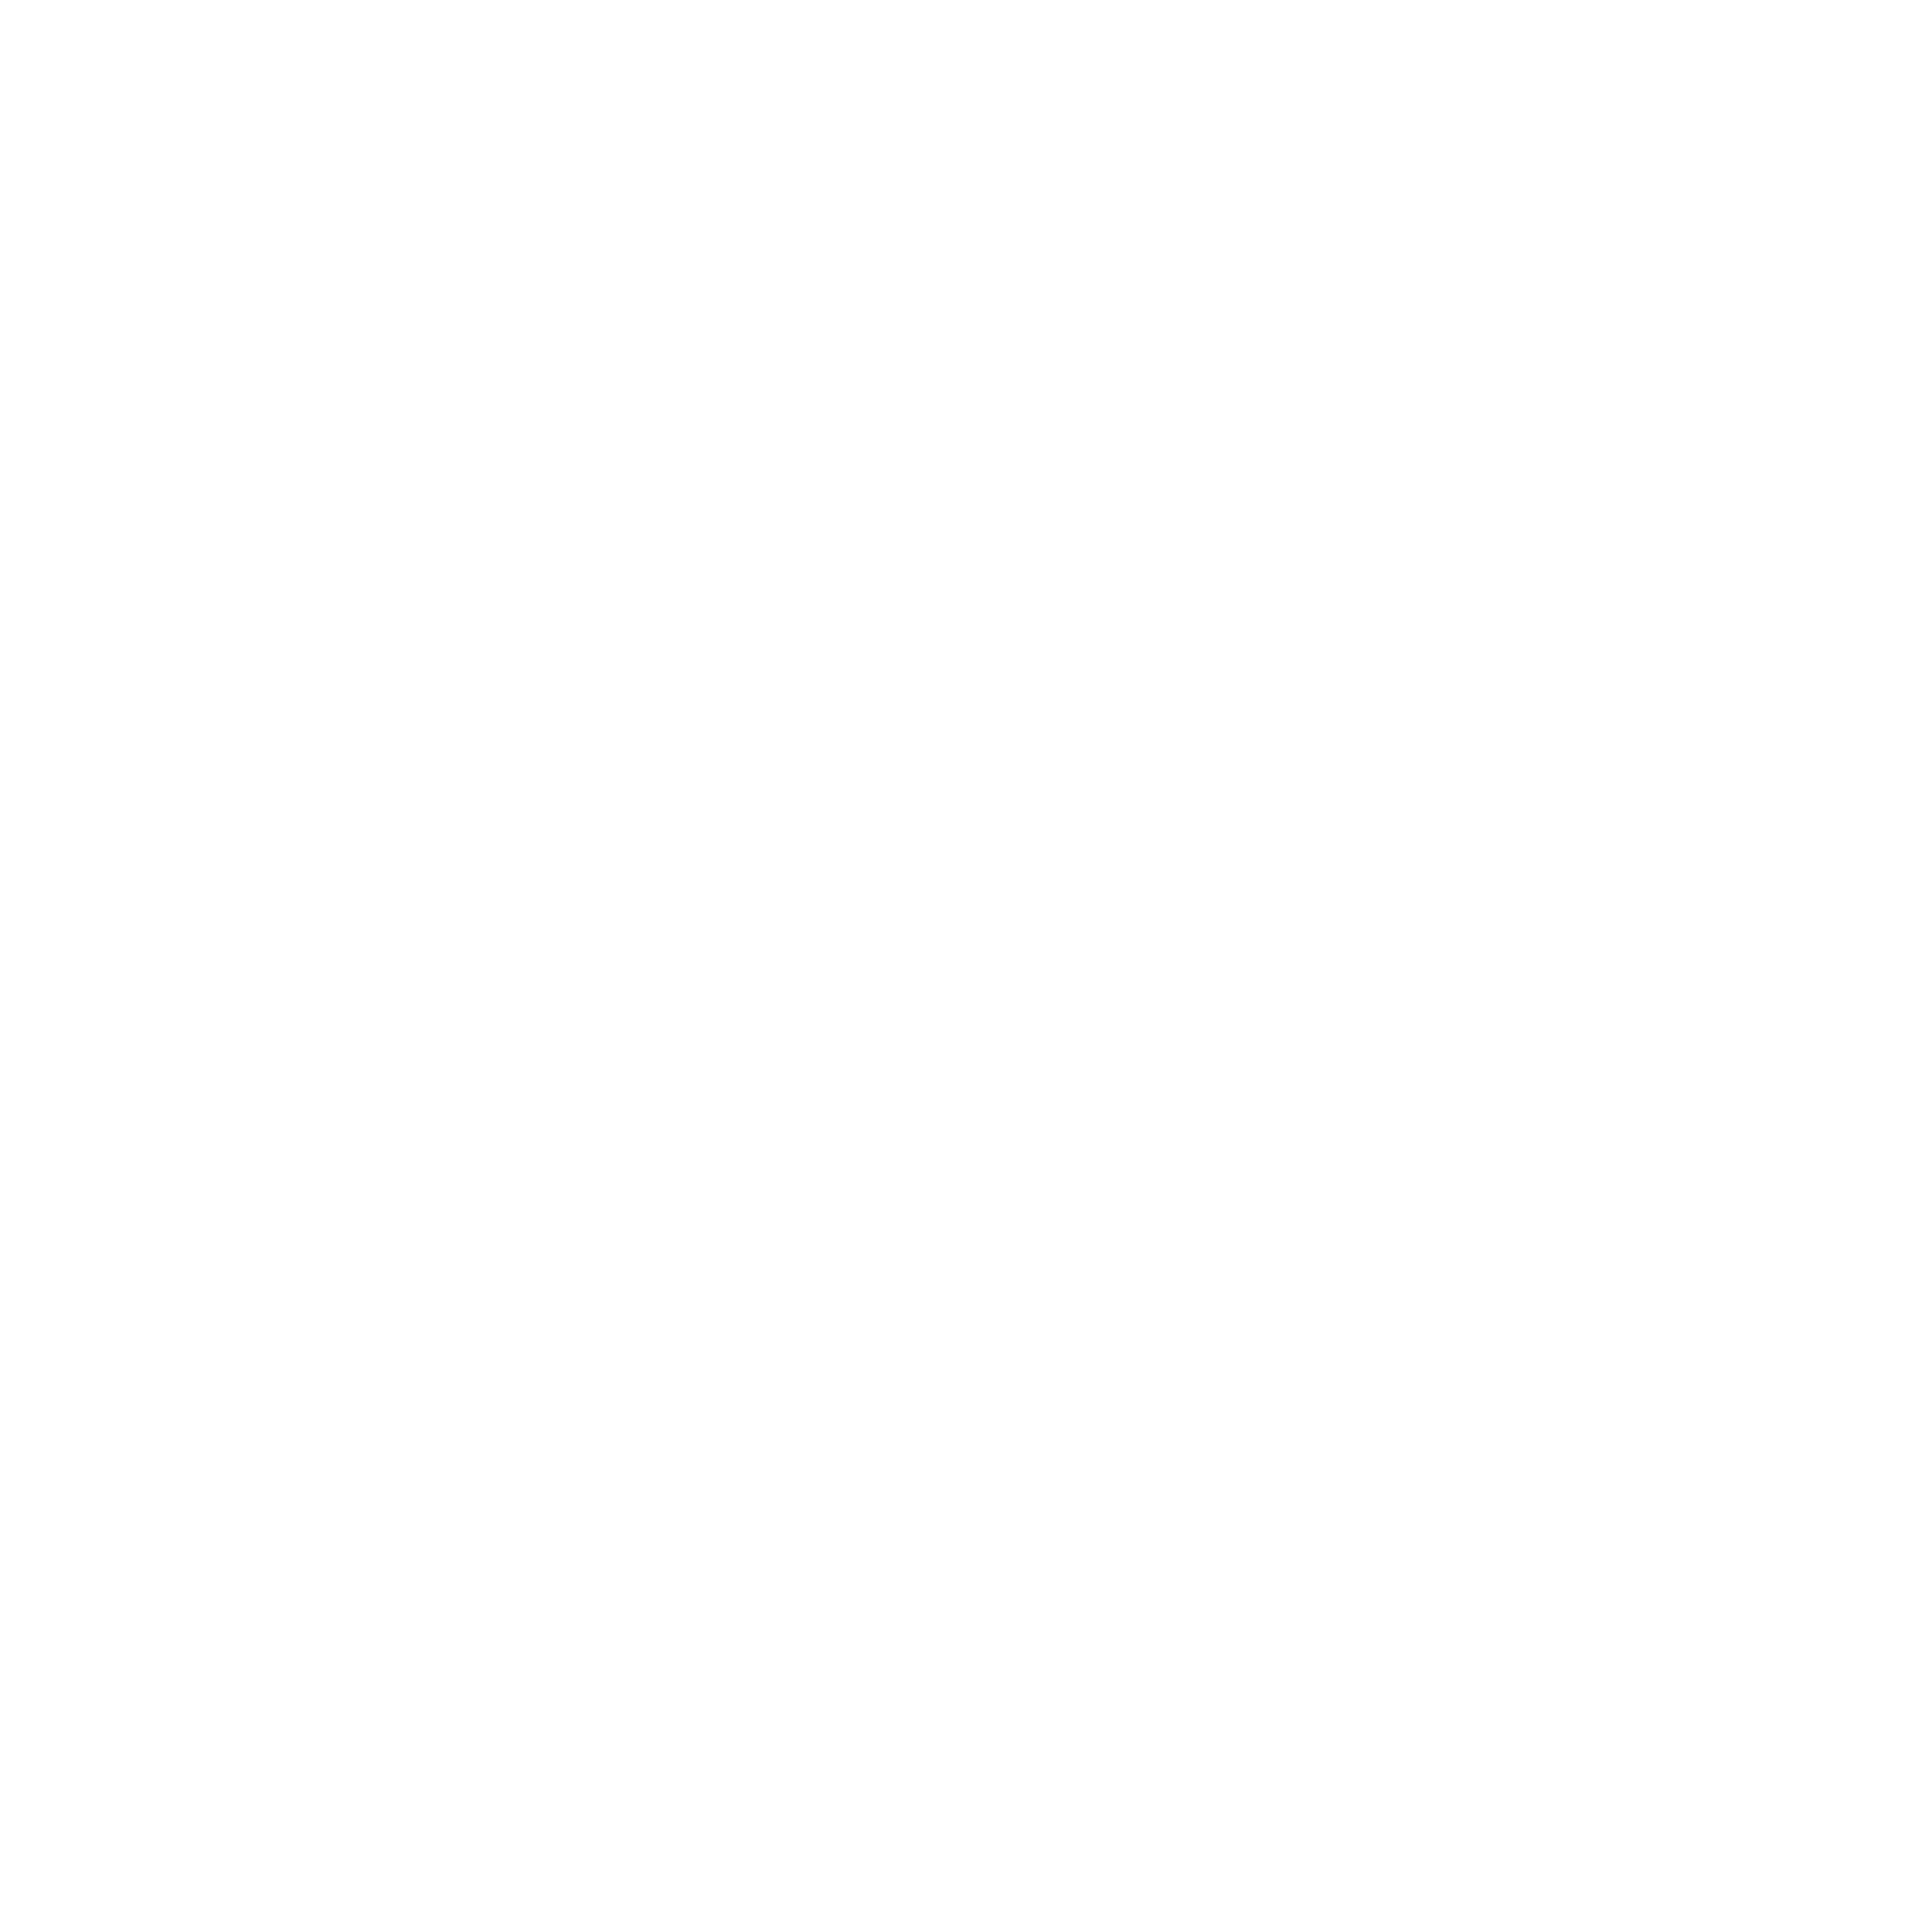 The Wyatt Weaver Band